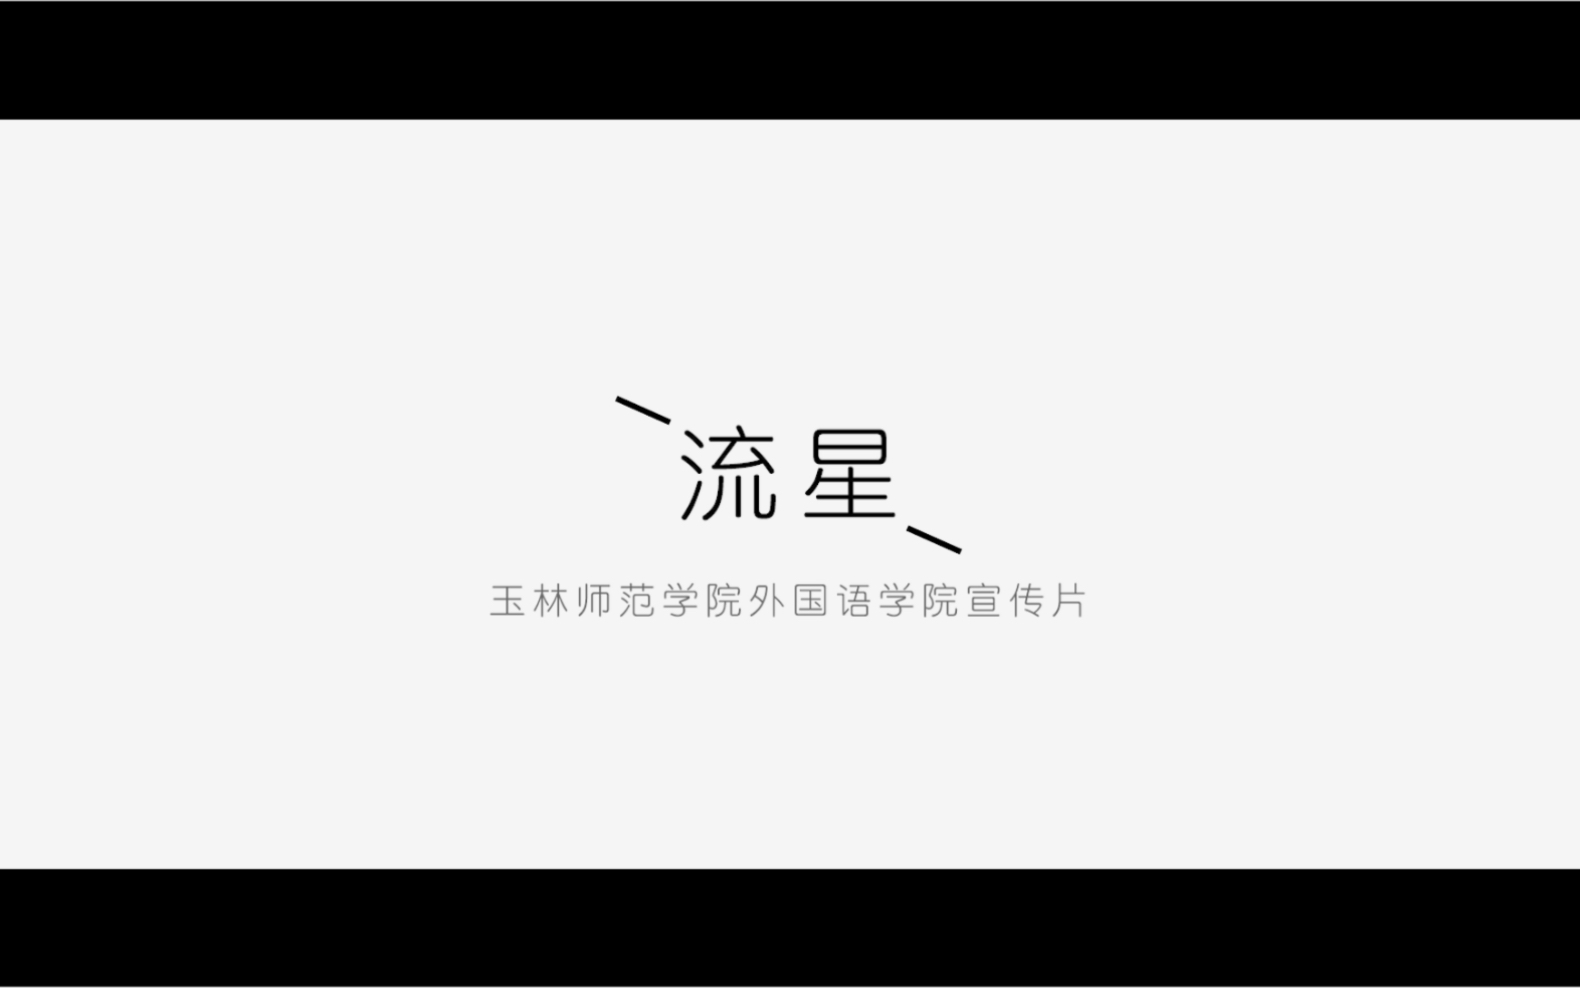 【宣传片】玉林师范学院外国语学院宣传片《流